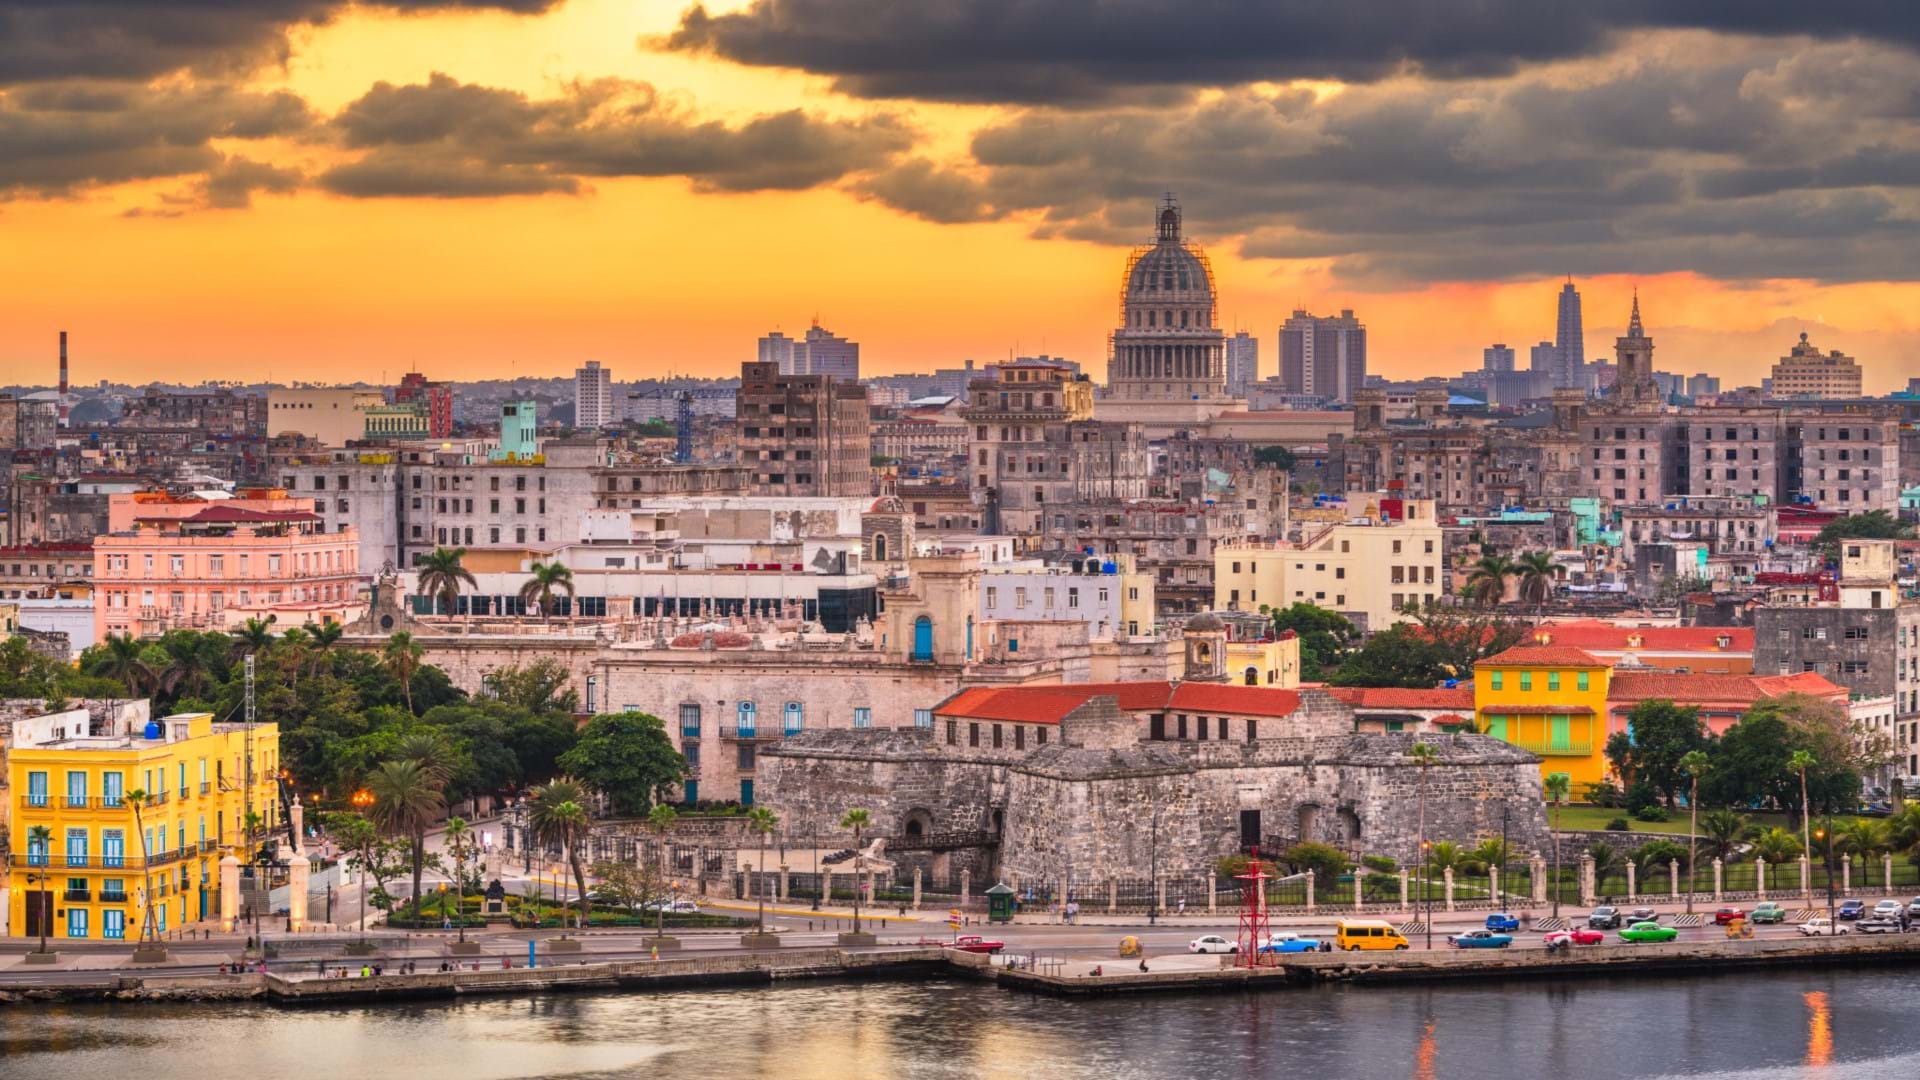 Hvala, Obala i zgrade stare Havane. Autentična Kuba